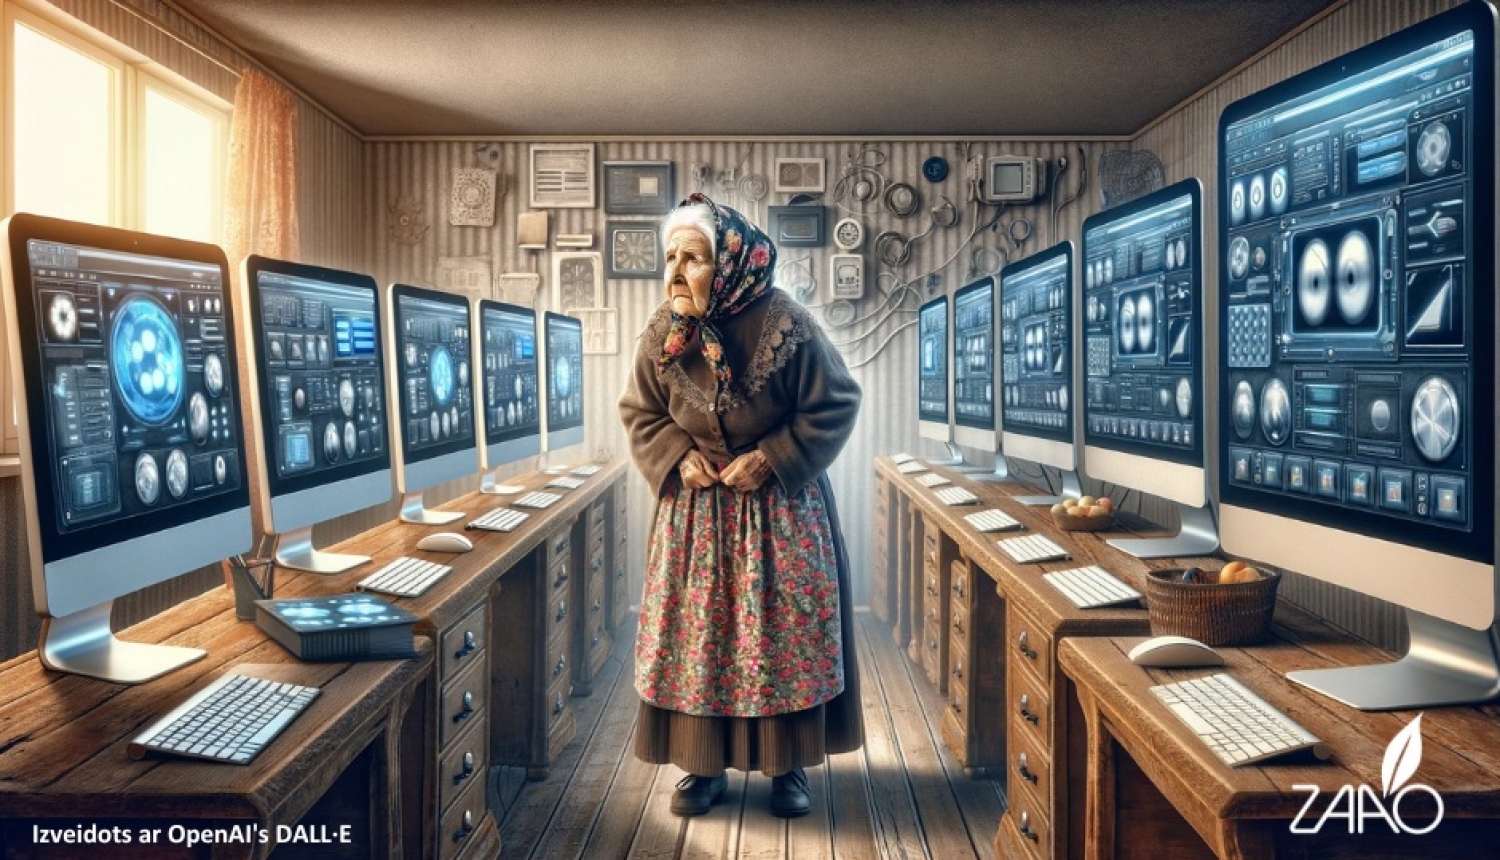 Baneris ar kundzi gados starp datoru ekrāniem